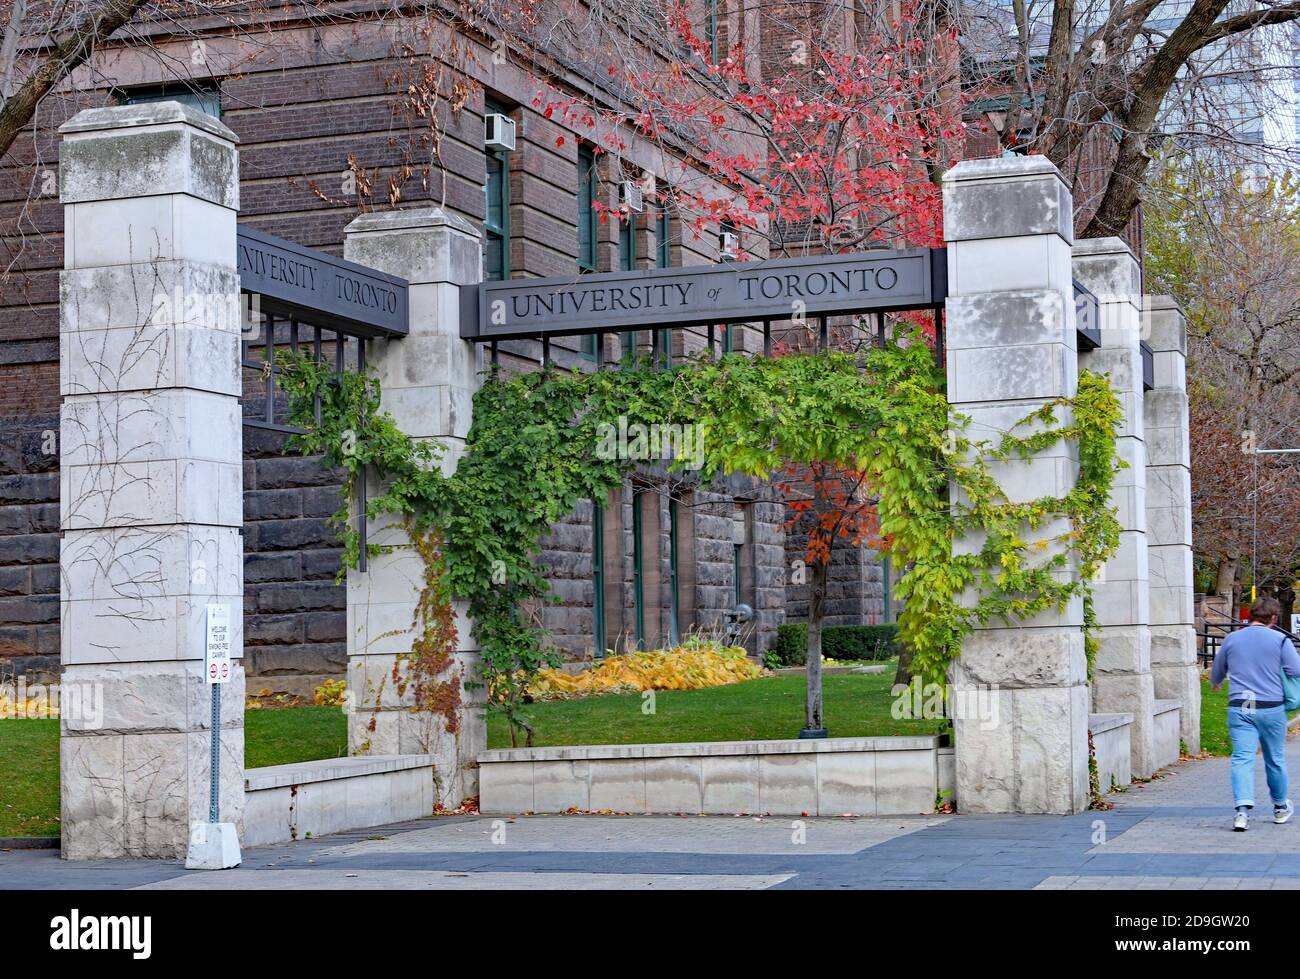 Toronto, Kanada - 5. November 2020: Das Eingangstor zum Hauptcampus der Universität von Toronto, mit einem großen alten akademischen Gebäude auf der Rückseite Stockfoto